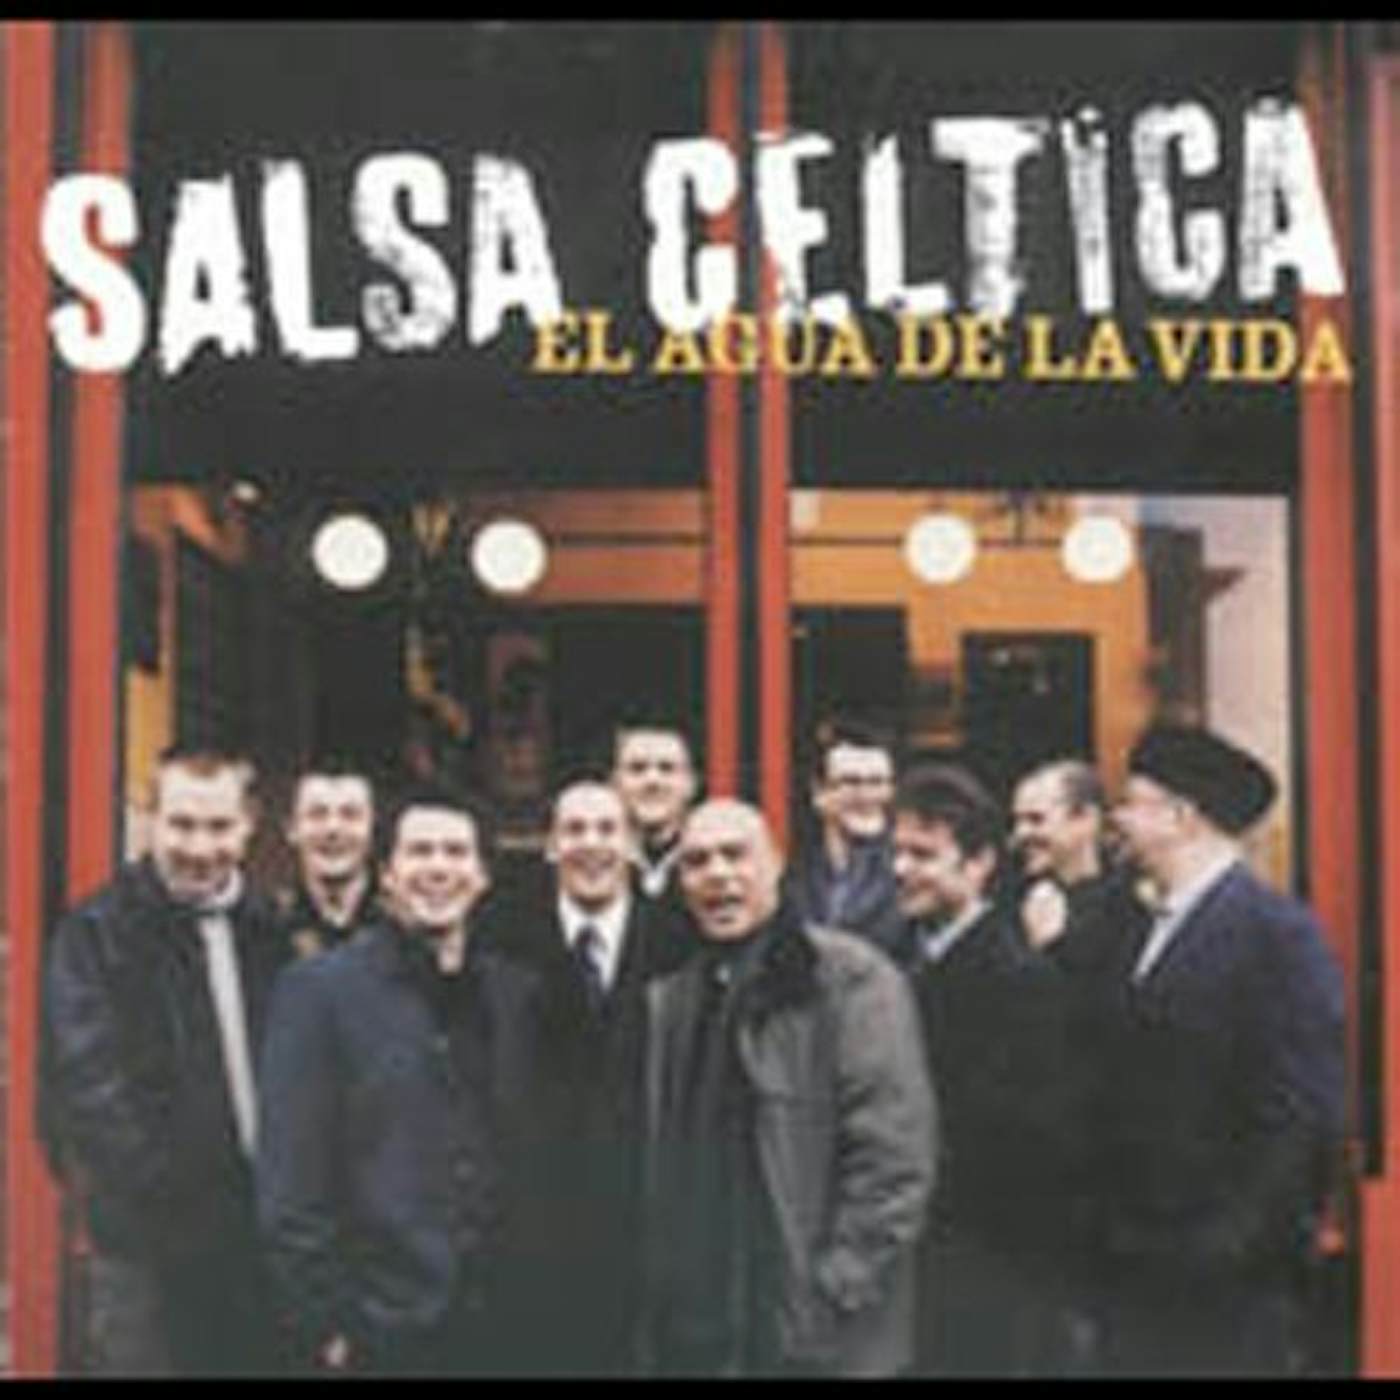 Salsa Celtica AGUA DE LA VIDA CD